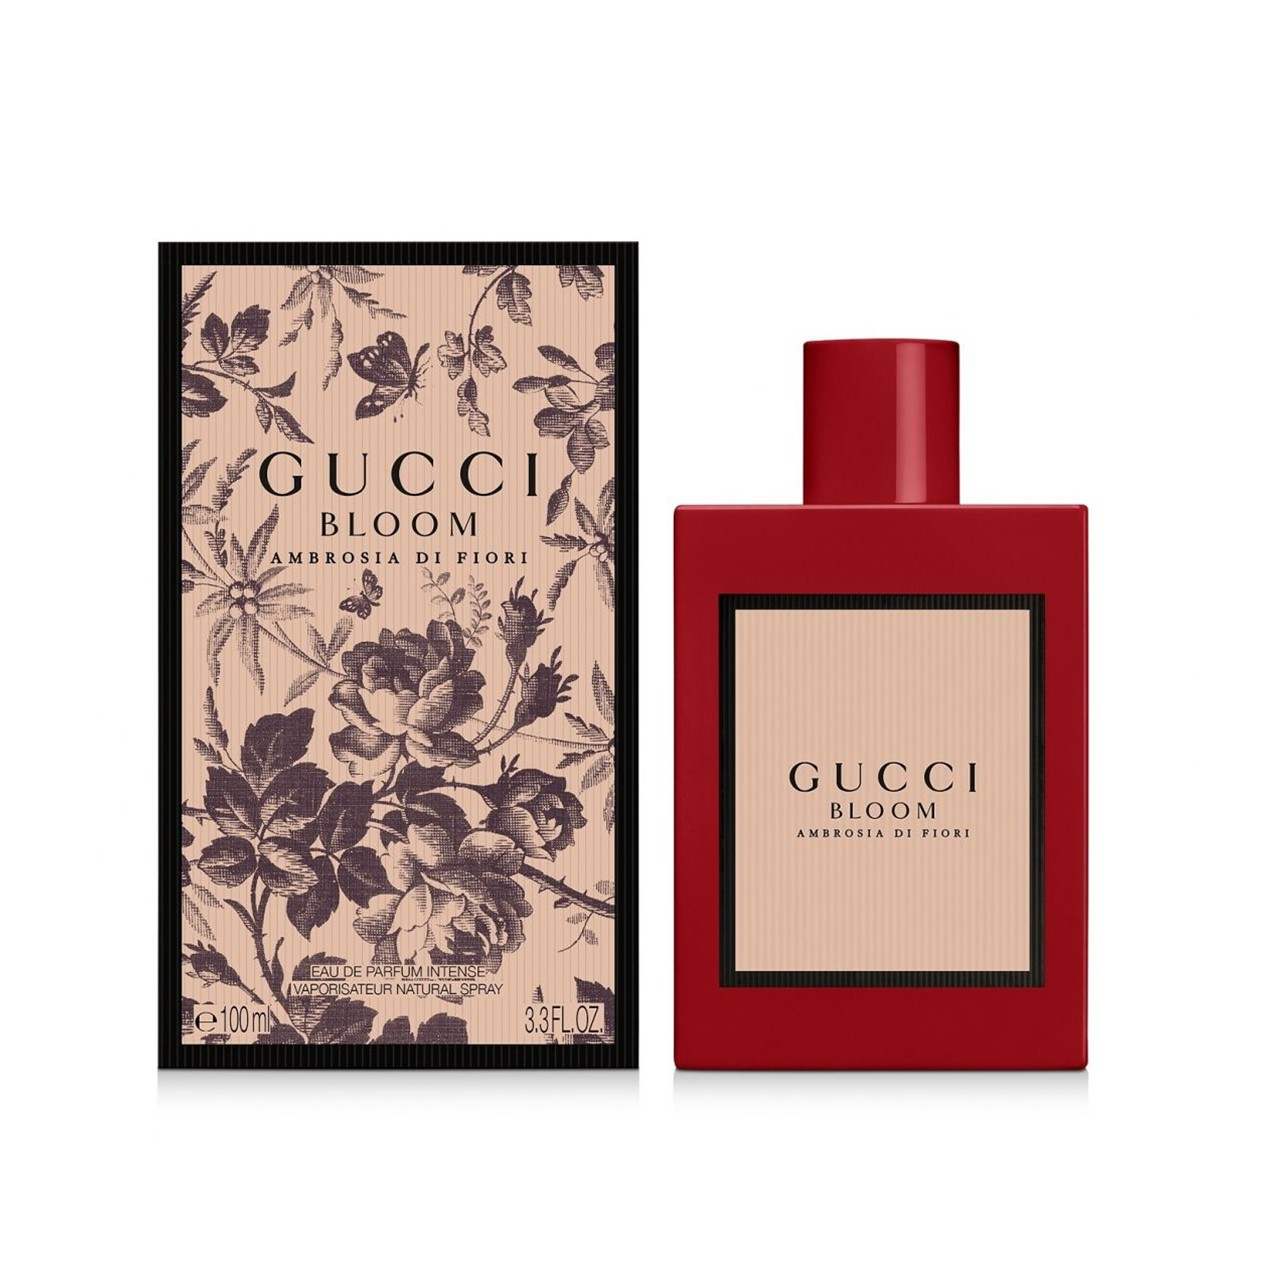 Gucci Bloom Ambrosia Di Fiori Eau de Parfum Intense 100ml (3.4fl oz)